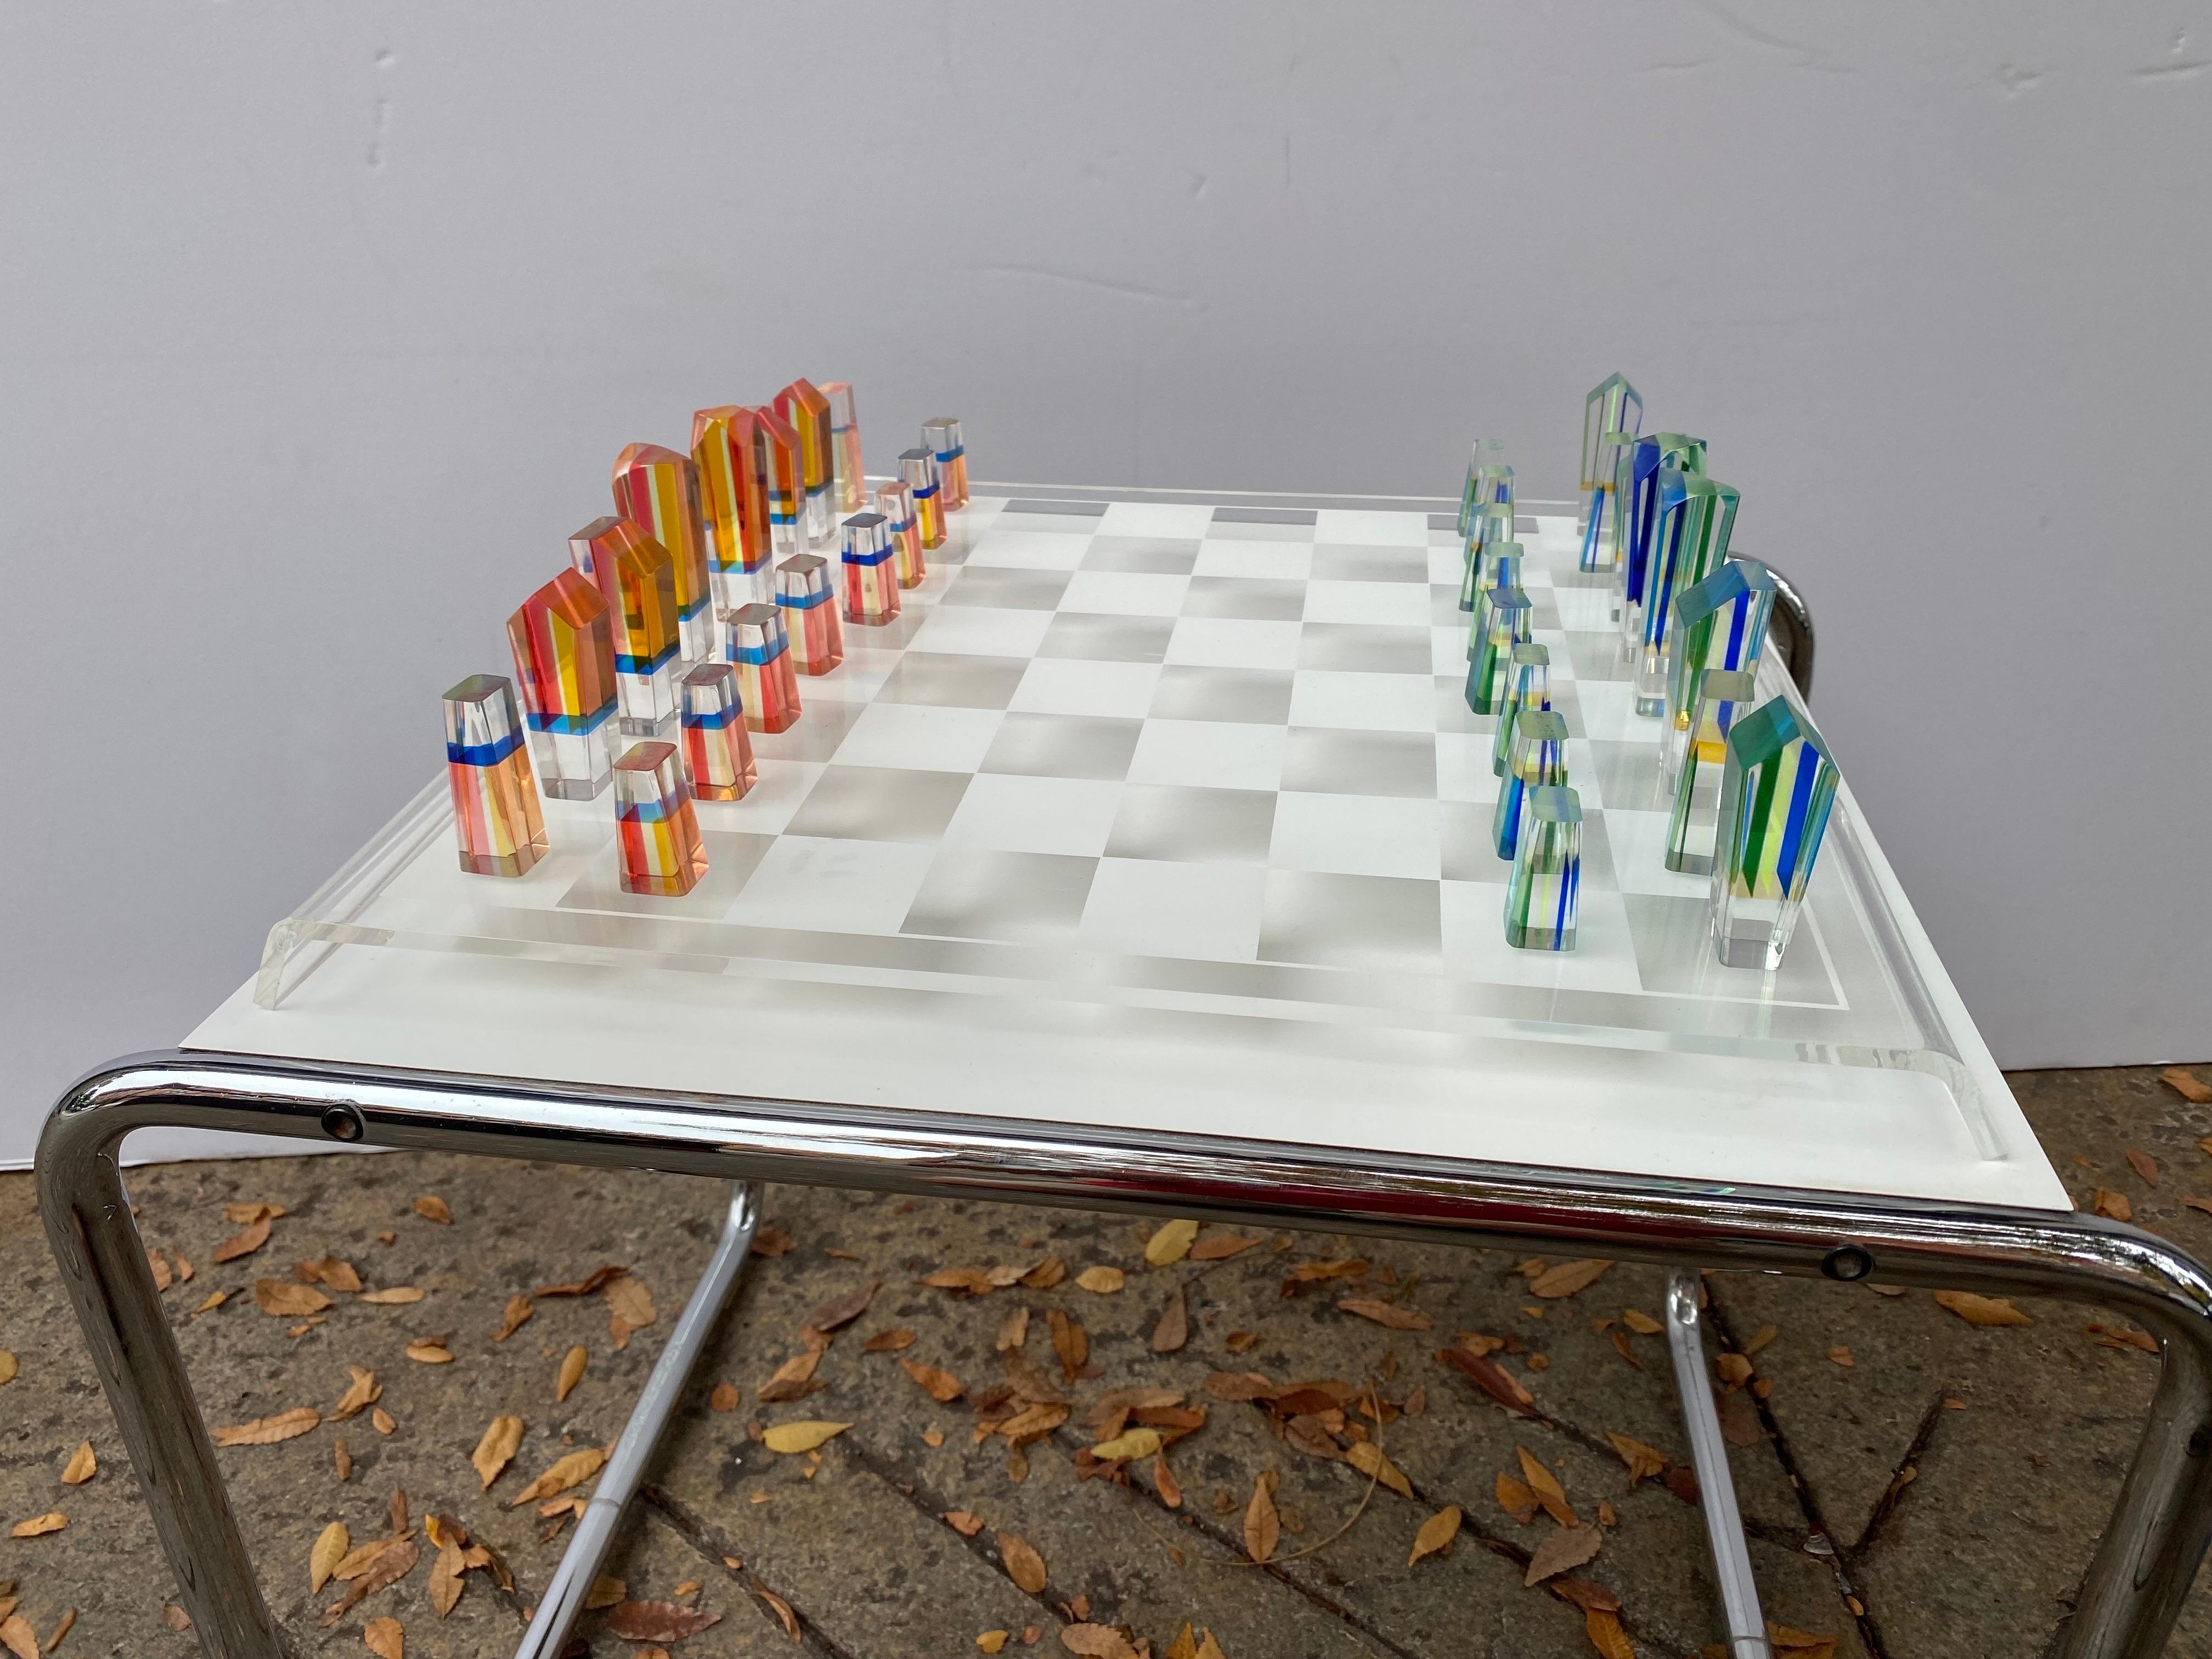 Charles Hollis Jones Lucite Schachspiel und Brett. Lucite-Spielsteine aus gestapeltem farbigem Lucite. Eine Gruppe ist in Orange- und Rottönen gehalten, die andere Hälfte ist in Blau- und Grüntönen gehalten. Die Stücke sind in sehr guter Form, ohne